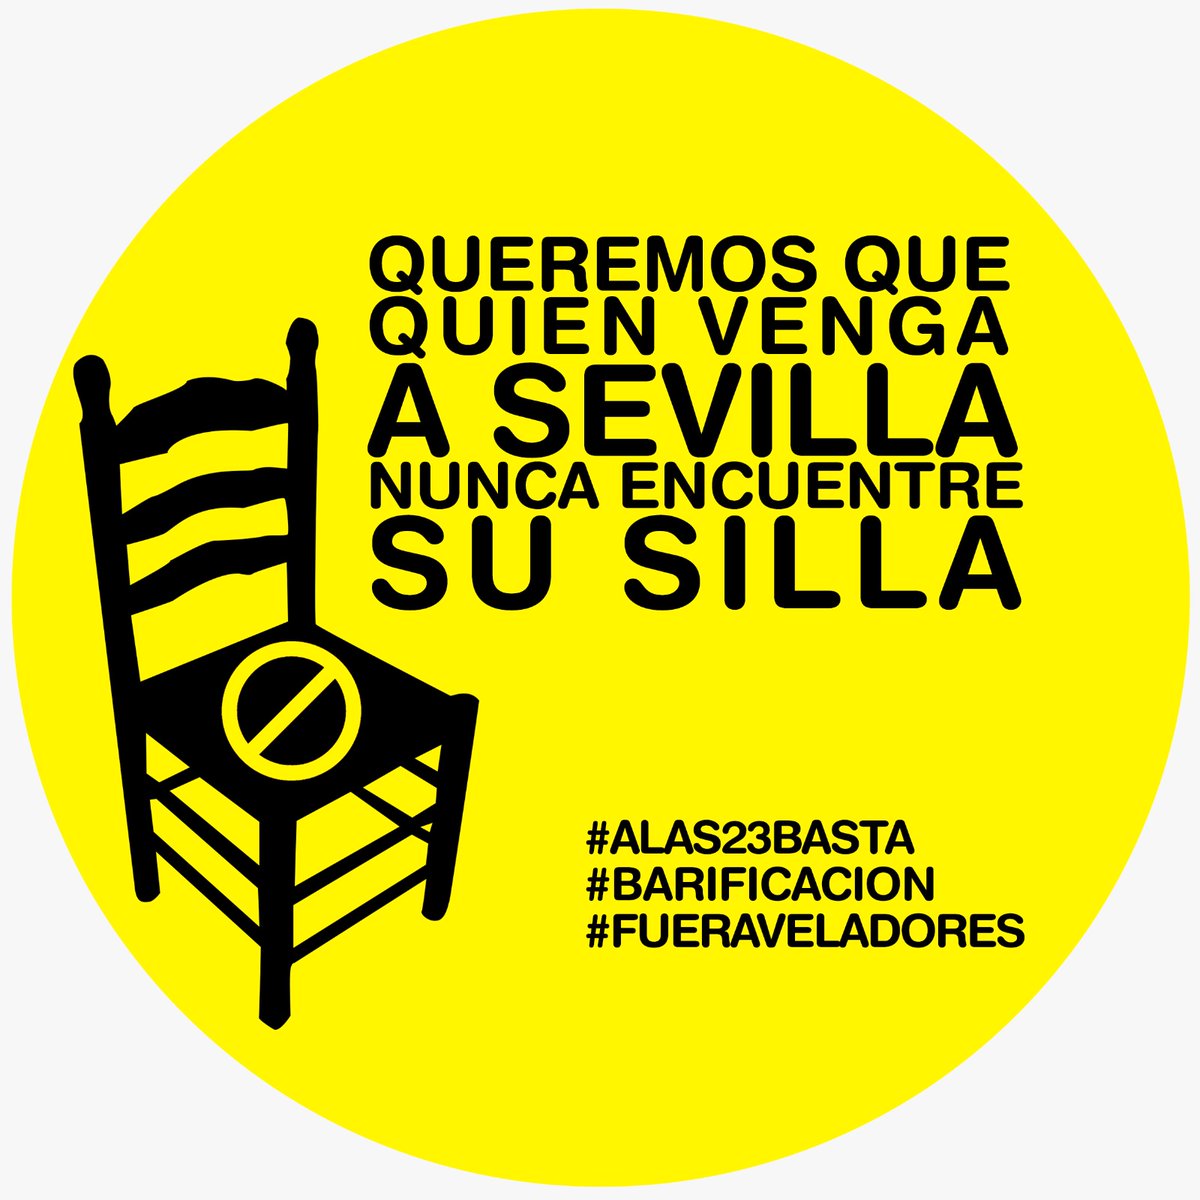 Gracias al lobby d @HosteleriaSev y a la permisividad d @Ayto_Sevilla @antoniomunozsev y @PoliciaSevilla toda #Sevilla es una terraza d bar. Peatonalizar no es #barificar Por el derecho al descanso #alas23basta @Aumesquet @jlsanzalcalde